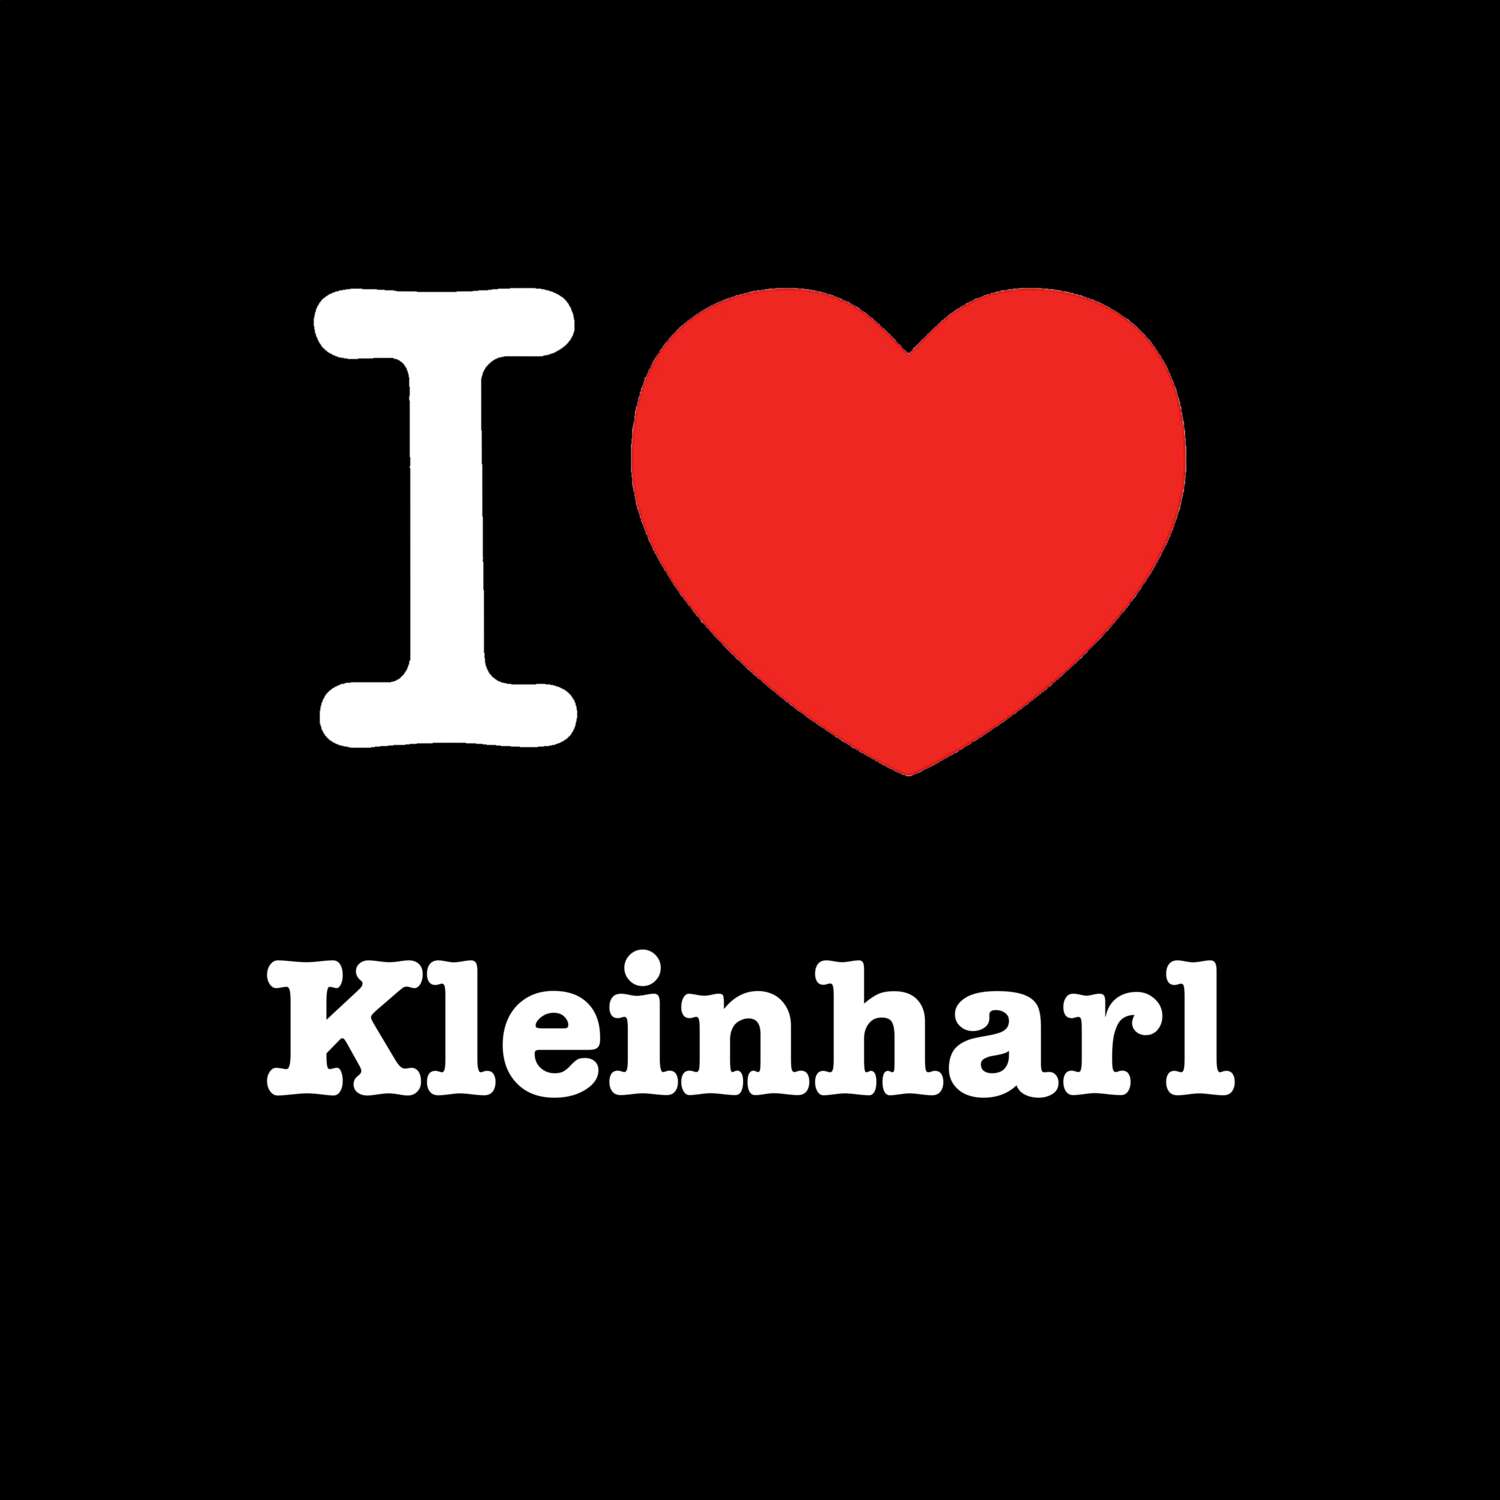 Kleinharl T-Shirt »I love«